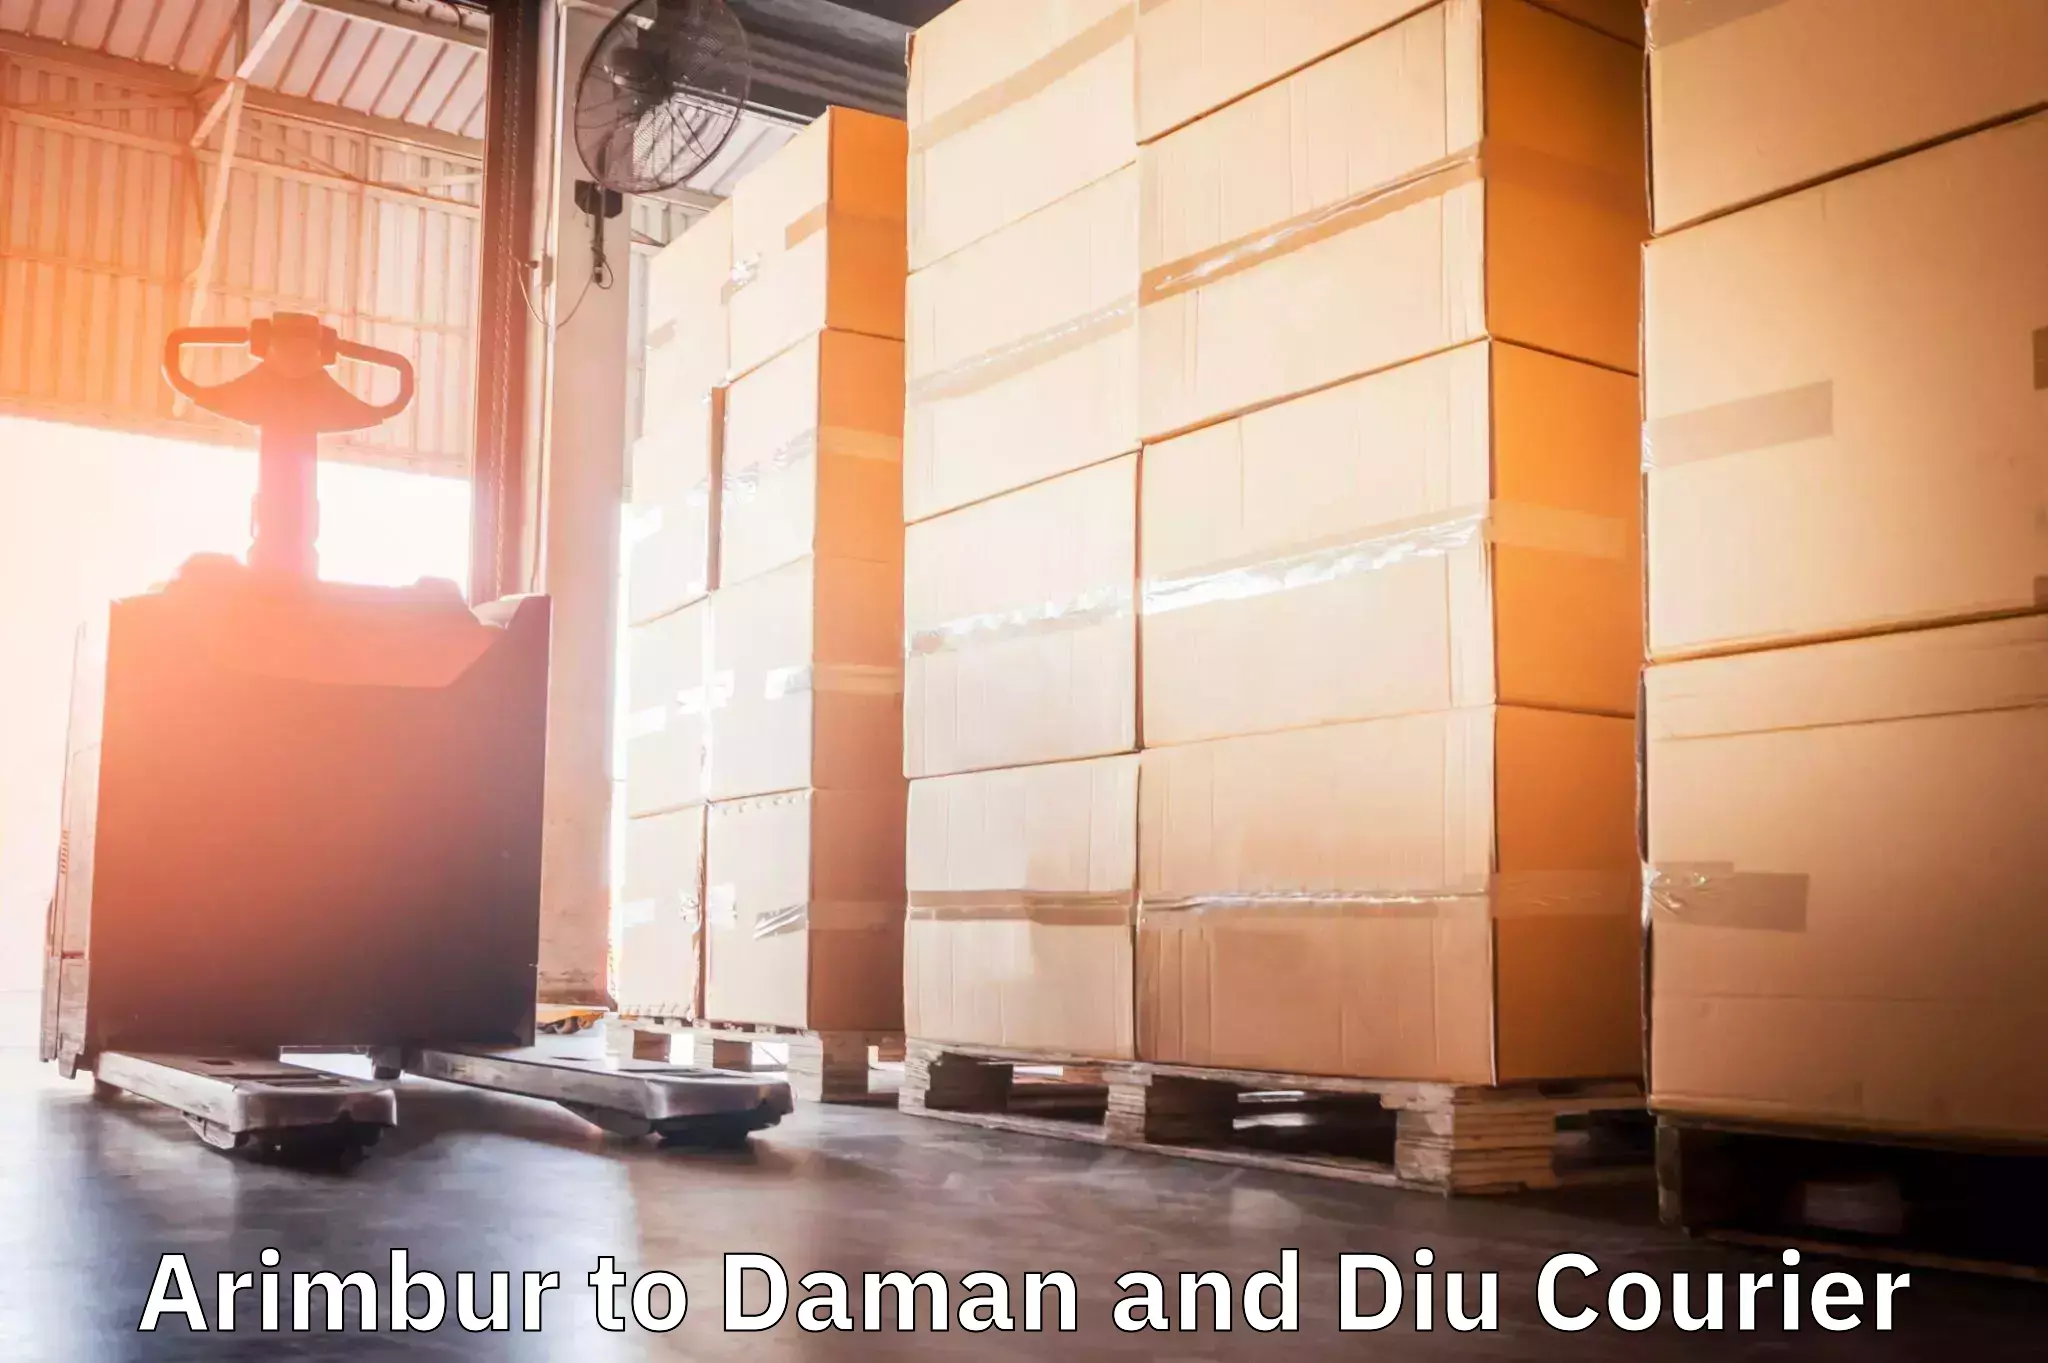 Professional parcel services Arimbur to Daman and Diu